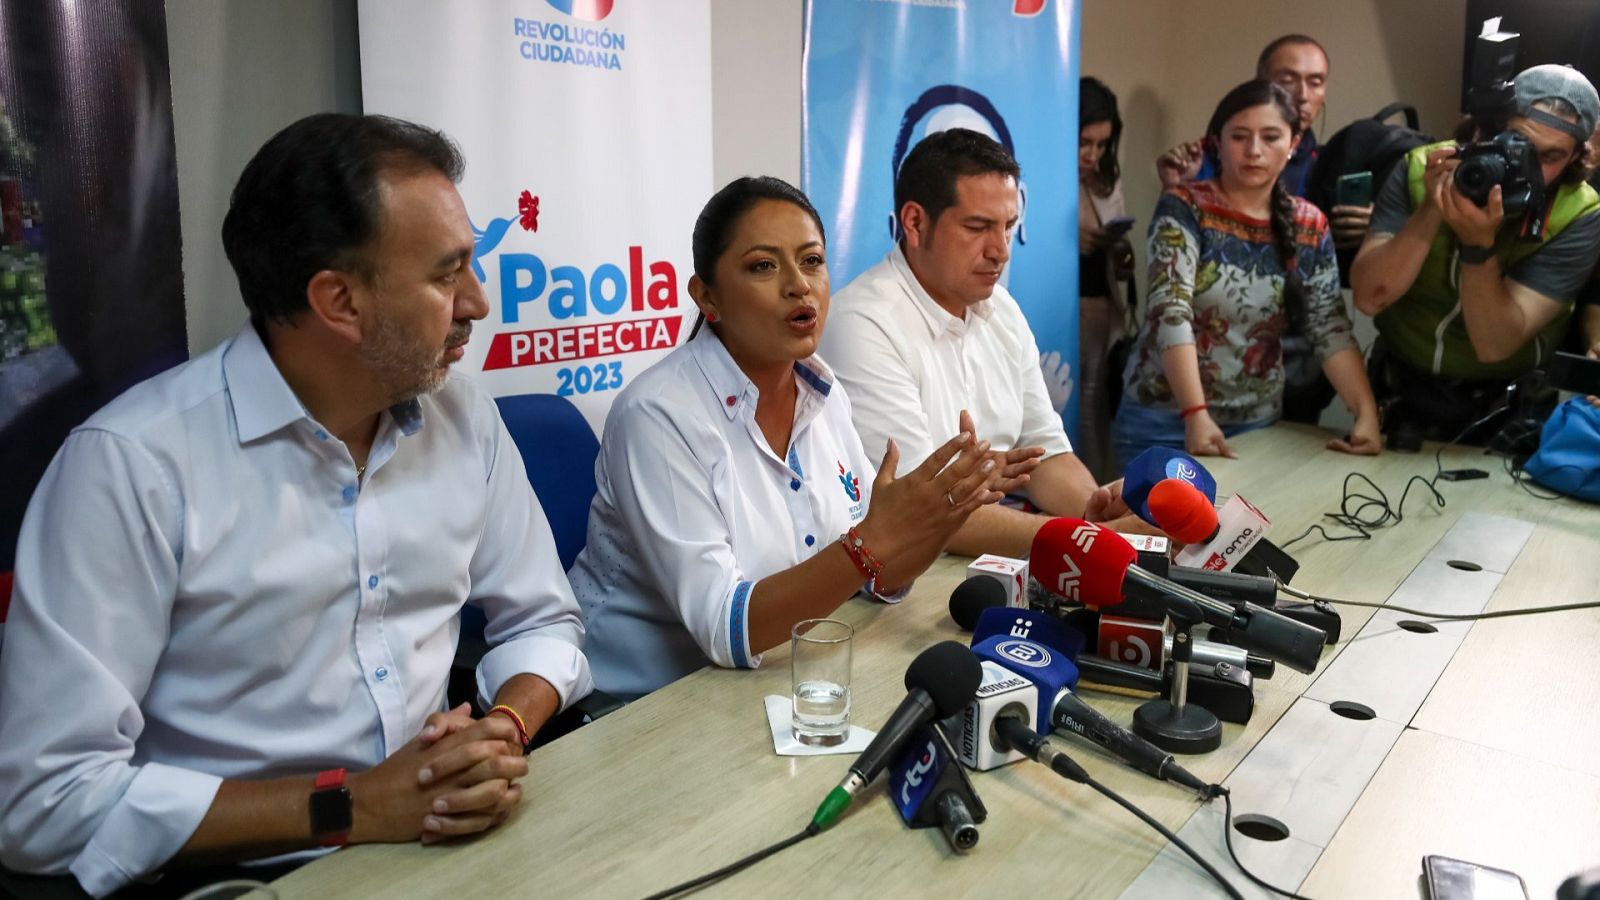 La prefecta de la provincia de Pichincha, Paola Pabón (c), junto al candidato de Revolución Ciudadana a alcalde de Quito, Pabel Muñoz (i),